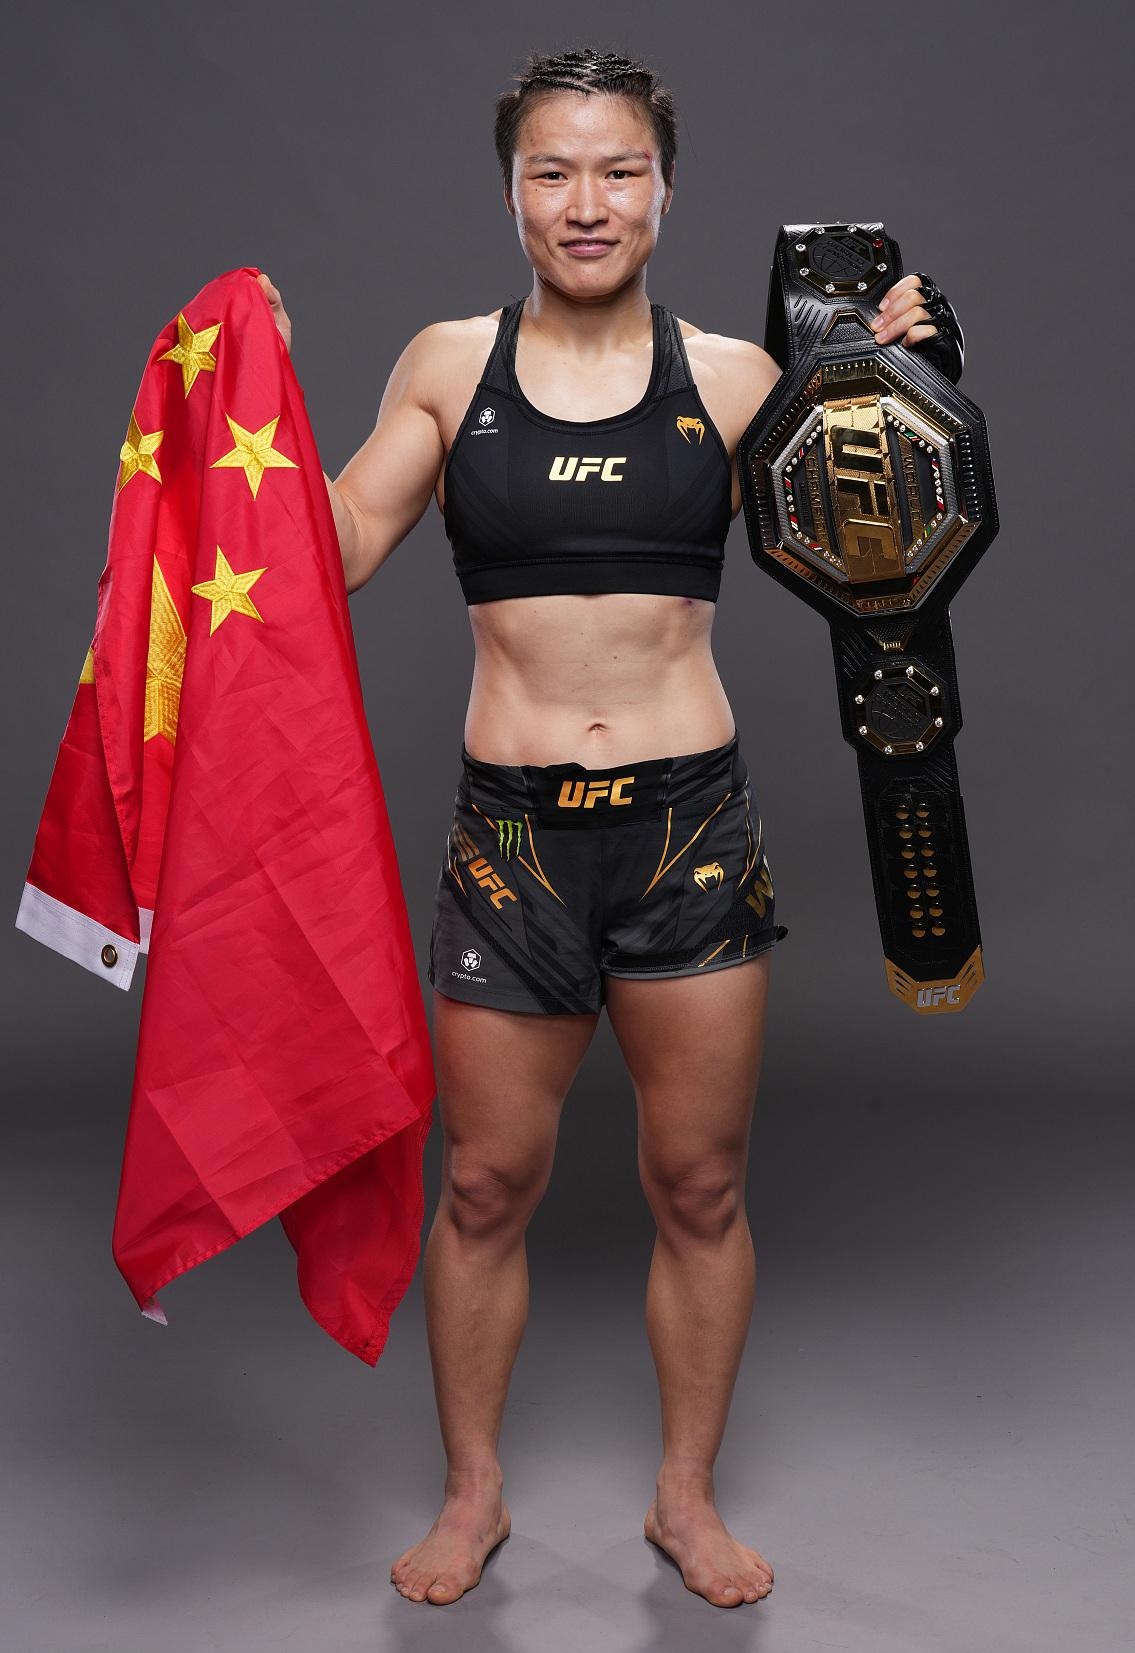 张伟丽成功卫冕ufc草量级金腰带,展现中国女子综合格斗的实力